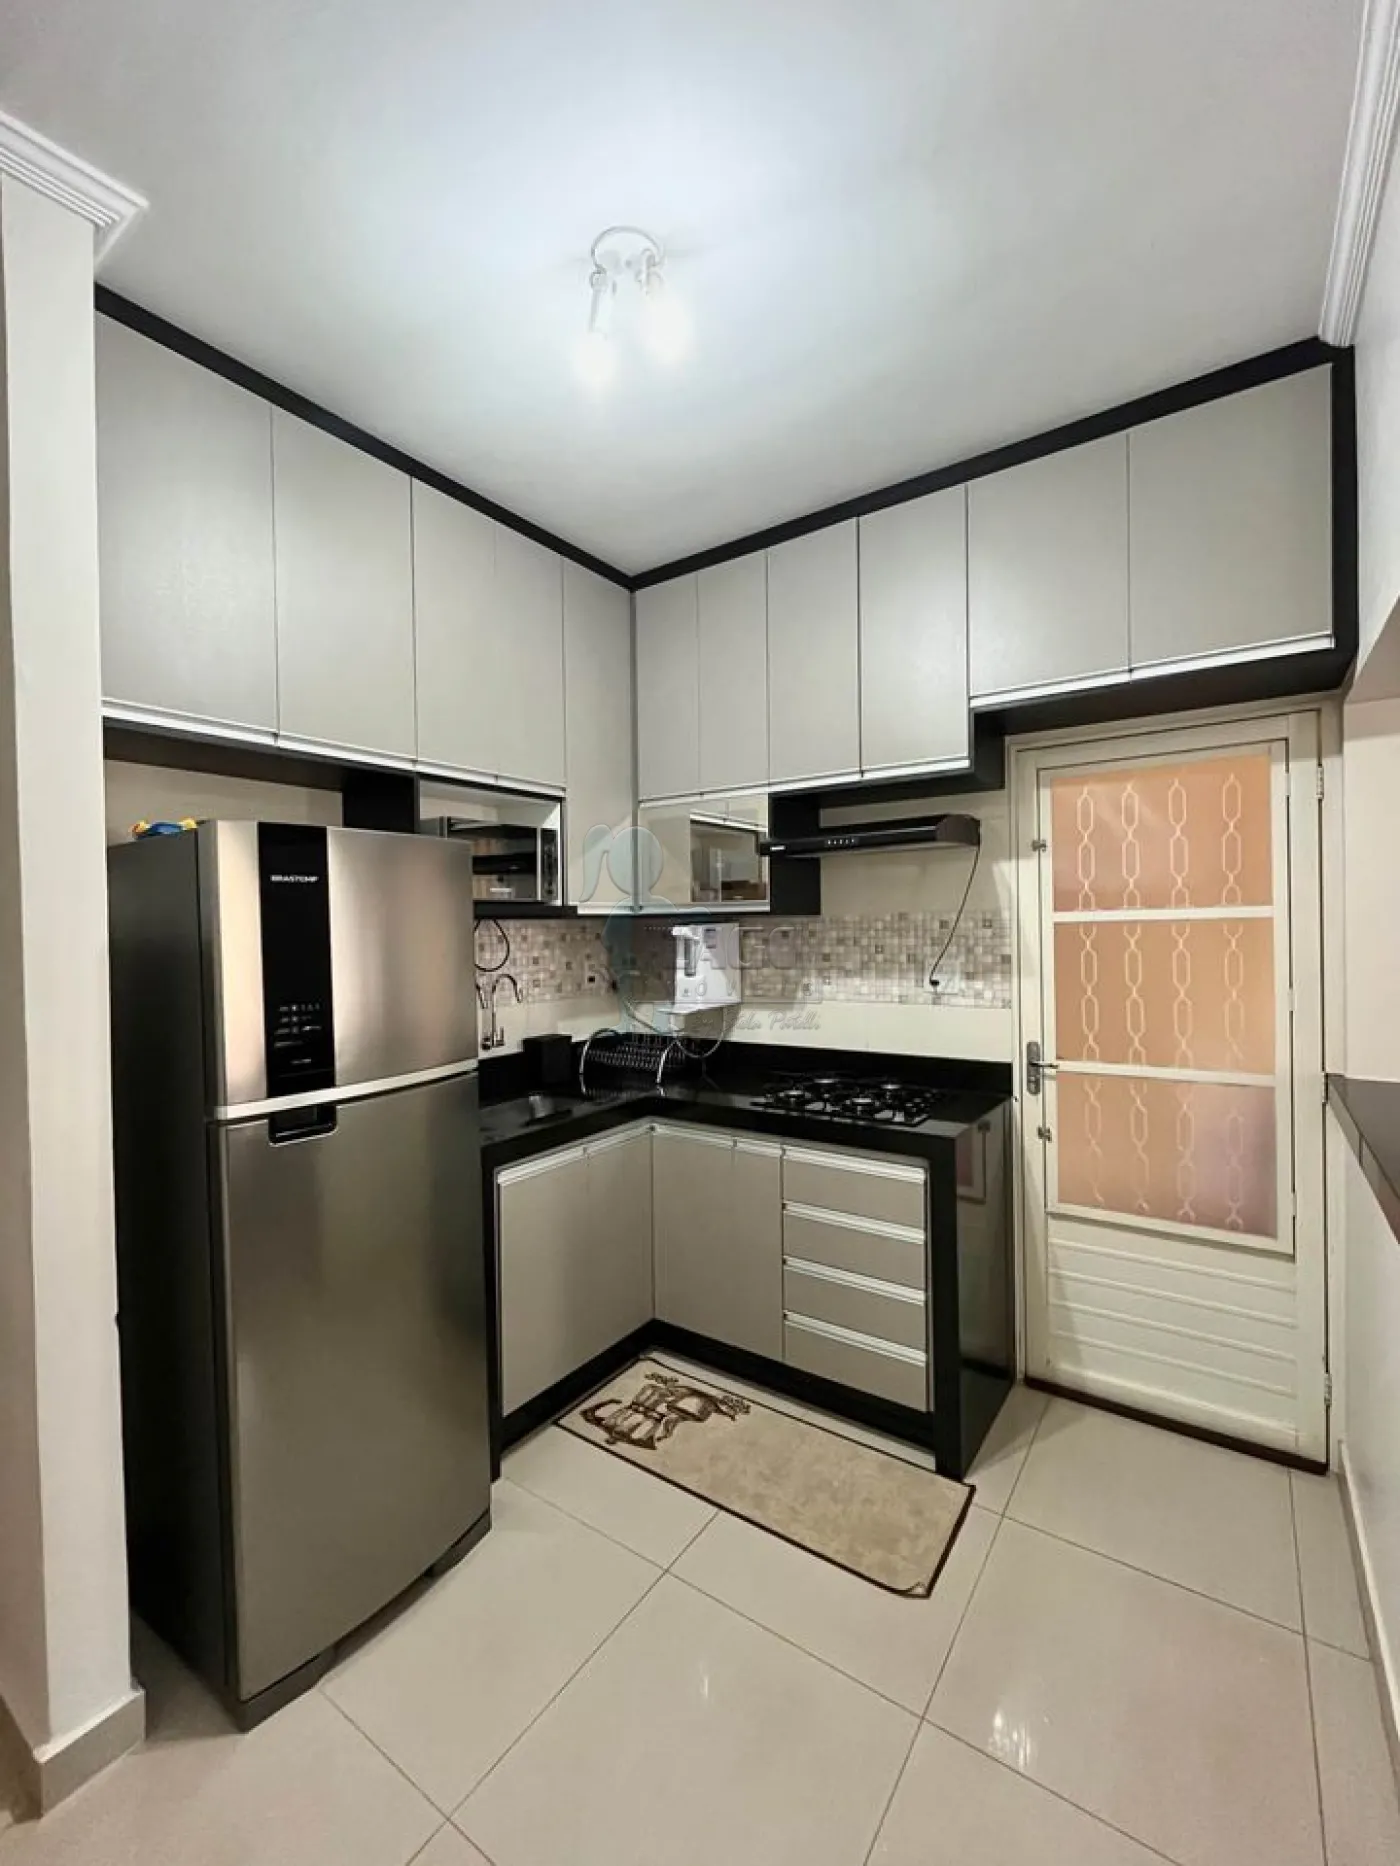 Comprar Casa condomínio / Padrão em Ribeirão Preto R$ 490.000,00 - Foto 6